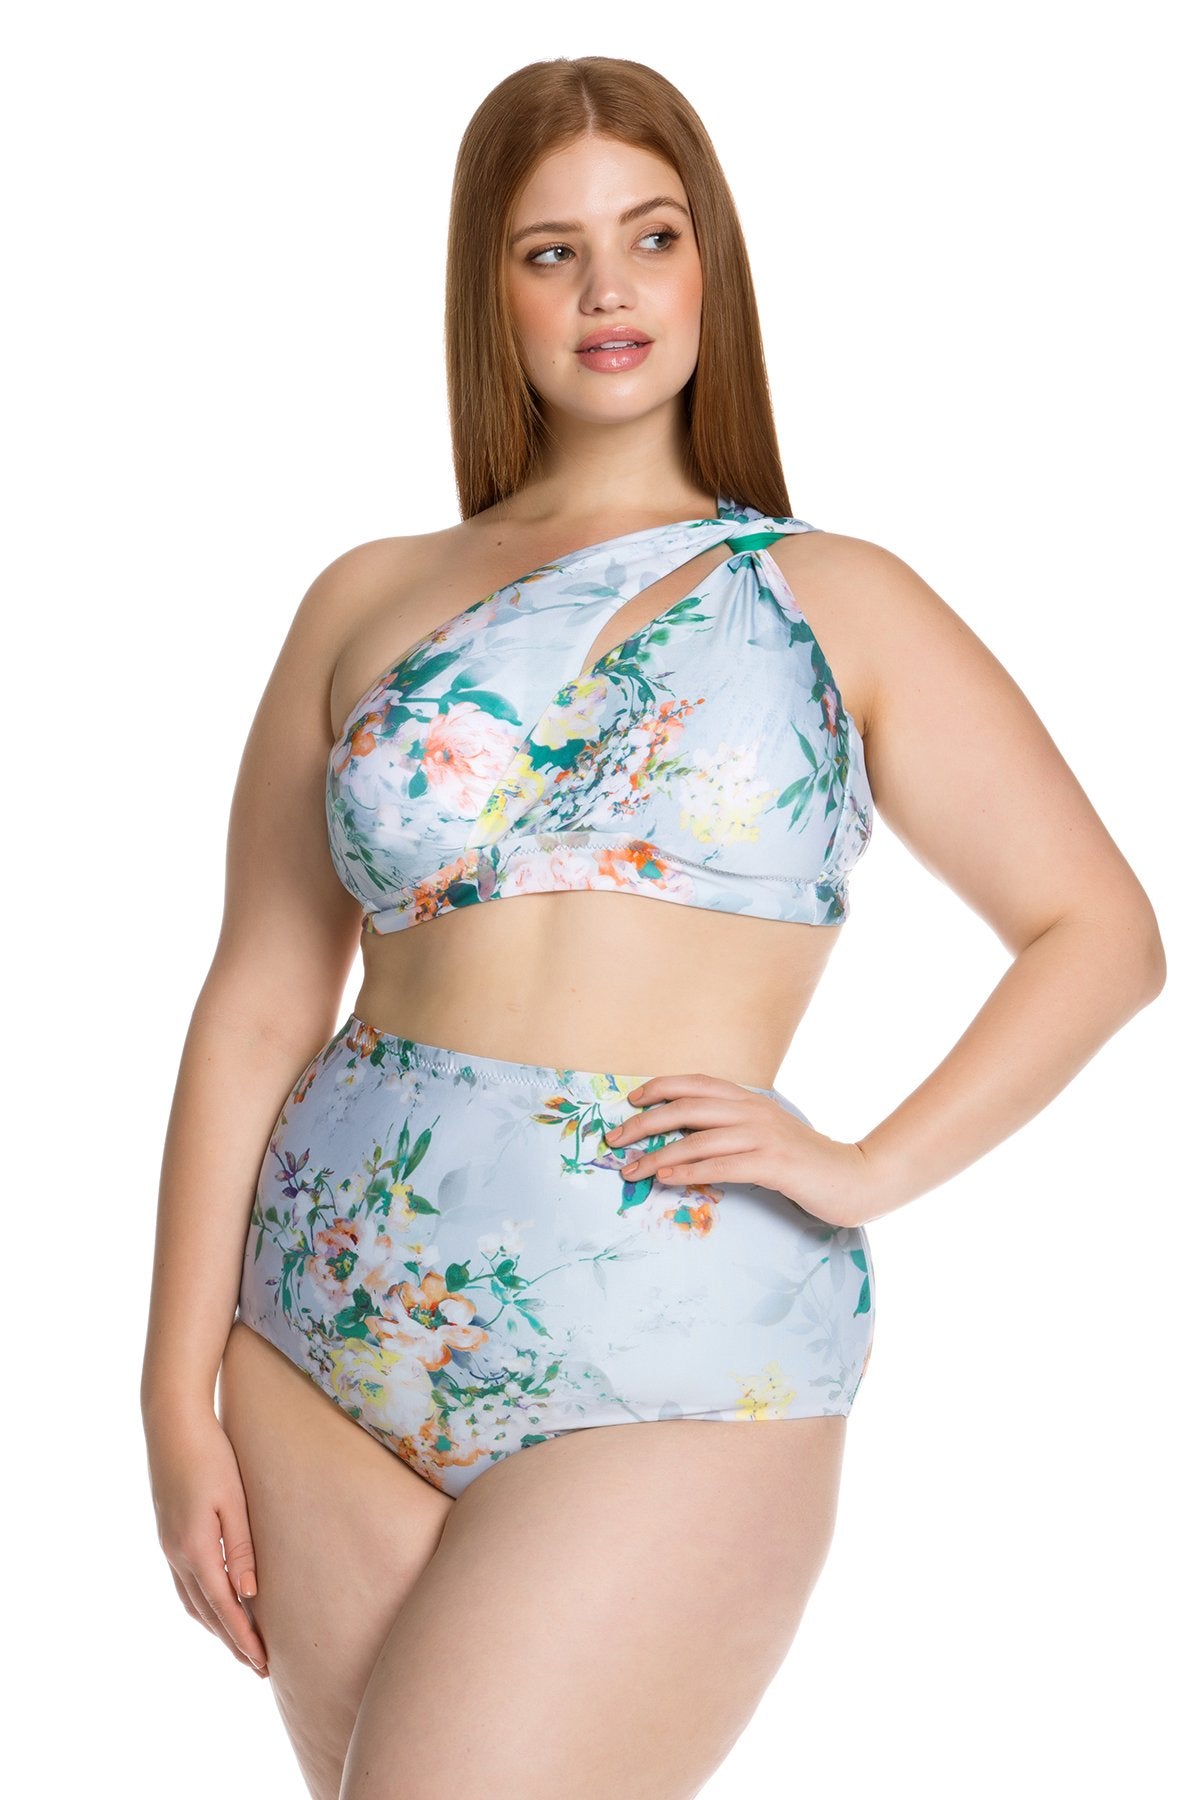 Femme Flora Bikini Top, Becca Etc - Iridescent Swimwear Boutique | Toronto, Canada